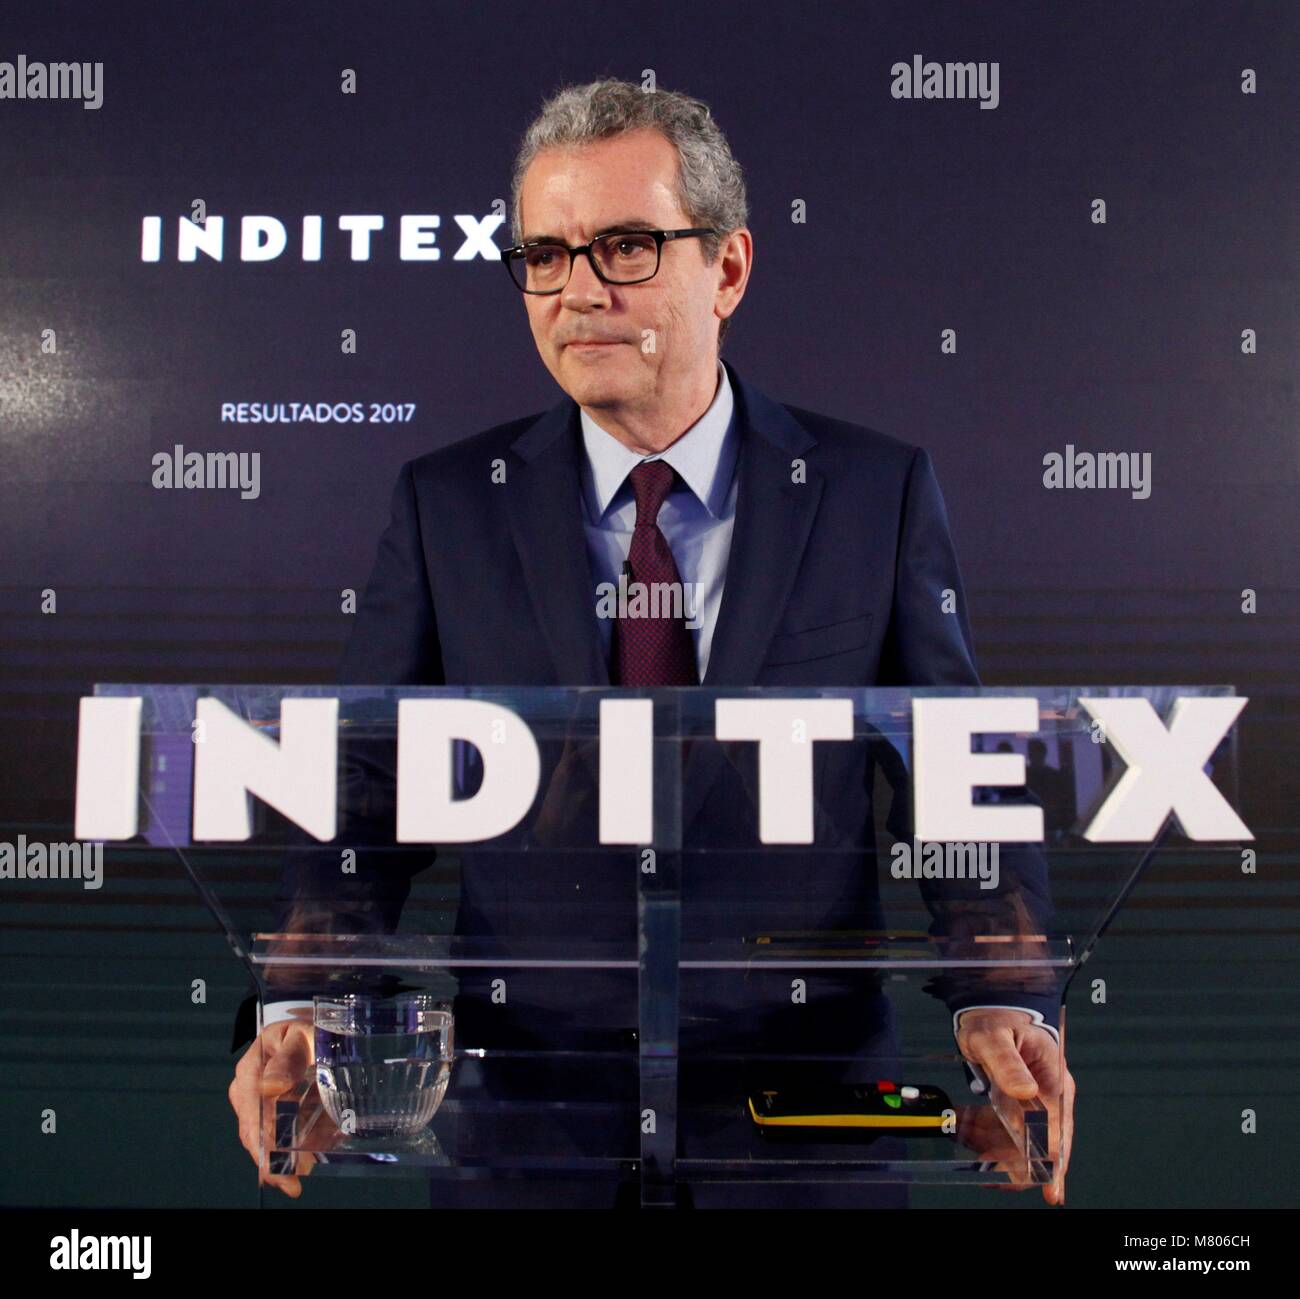 Groupe textile espagnol Inditex, PDG de Pablo Isla (R), traite d'une  conférence de presse pour annoncer les résultats annuels du groupe à  Arteixo, Galice, nord-ouest de l'Espagne, 14 mars 2018. Inditex,  propriétaire